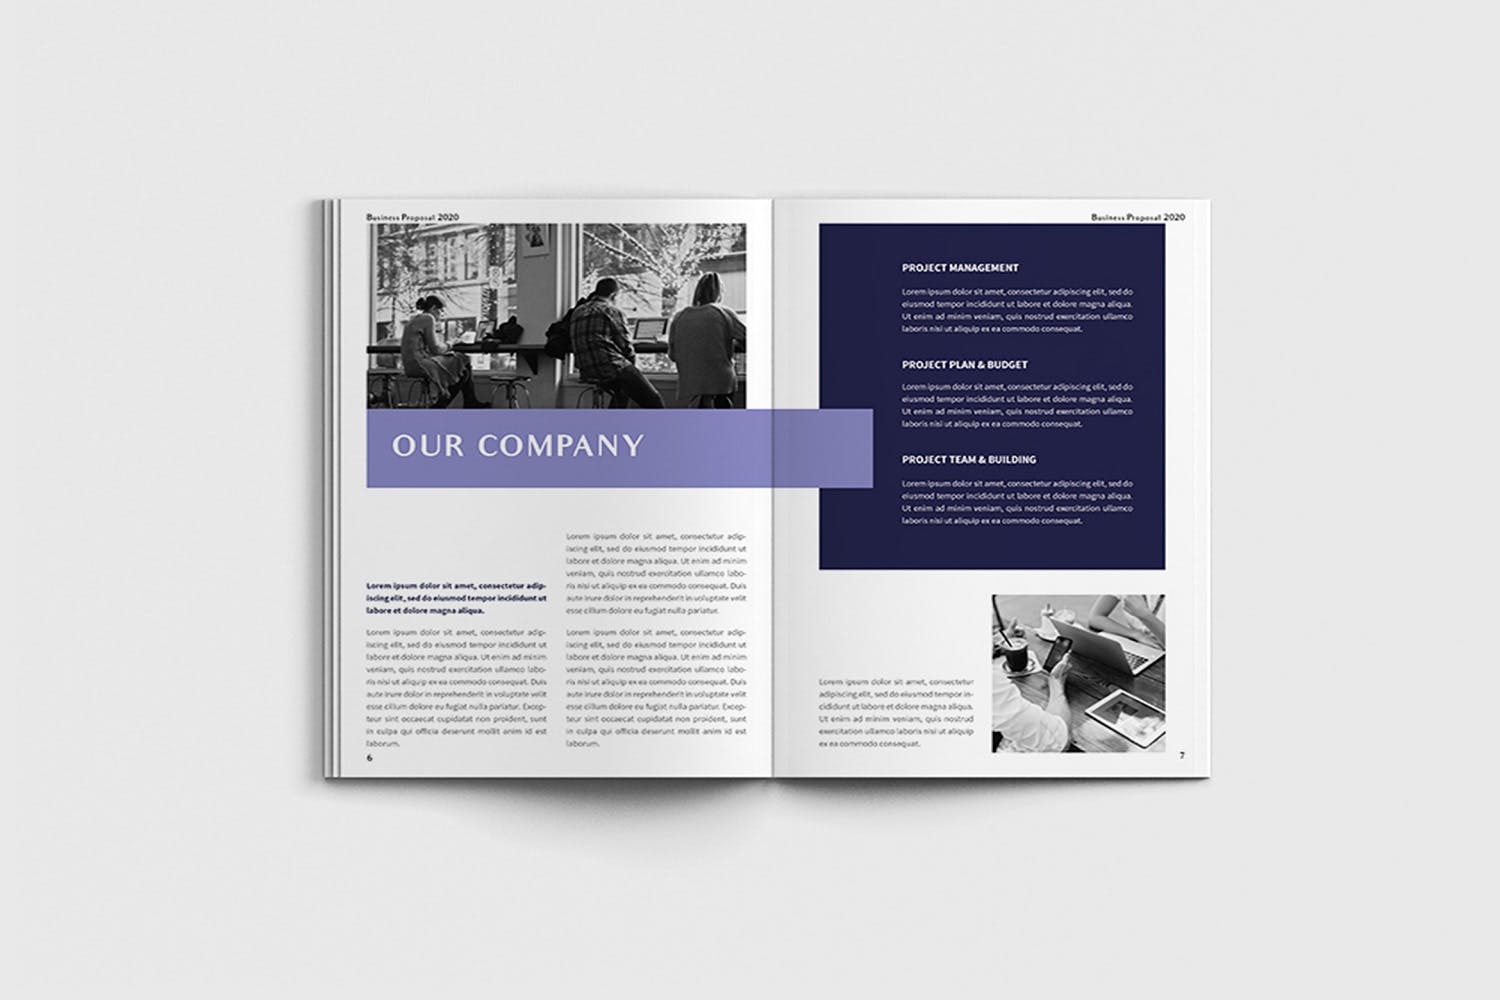 项目规划设计方案/项目解决方案画册设计模板 Exposina – A4 Business Brochure Template插图(3)